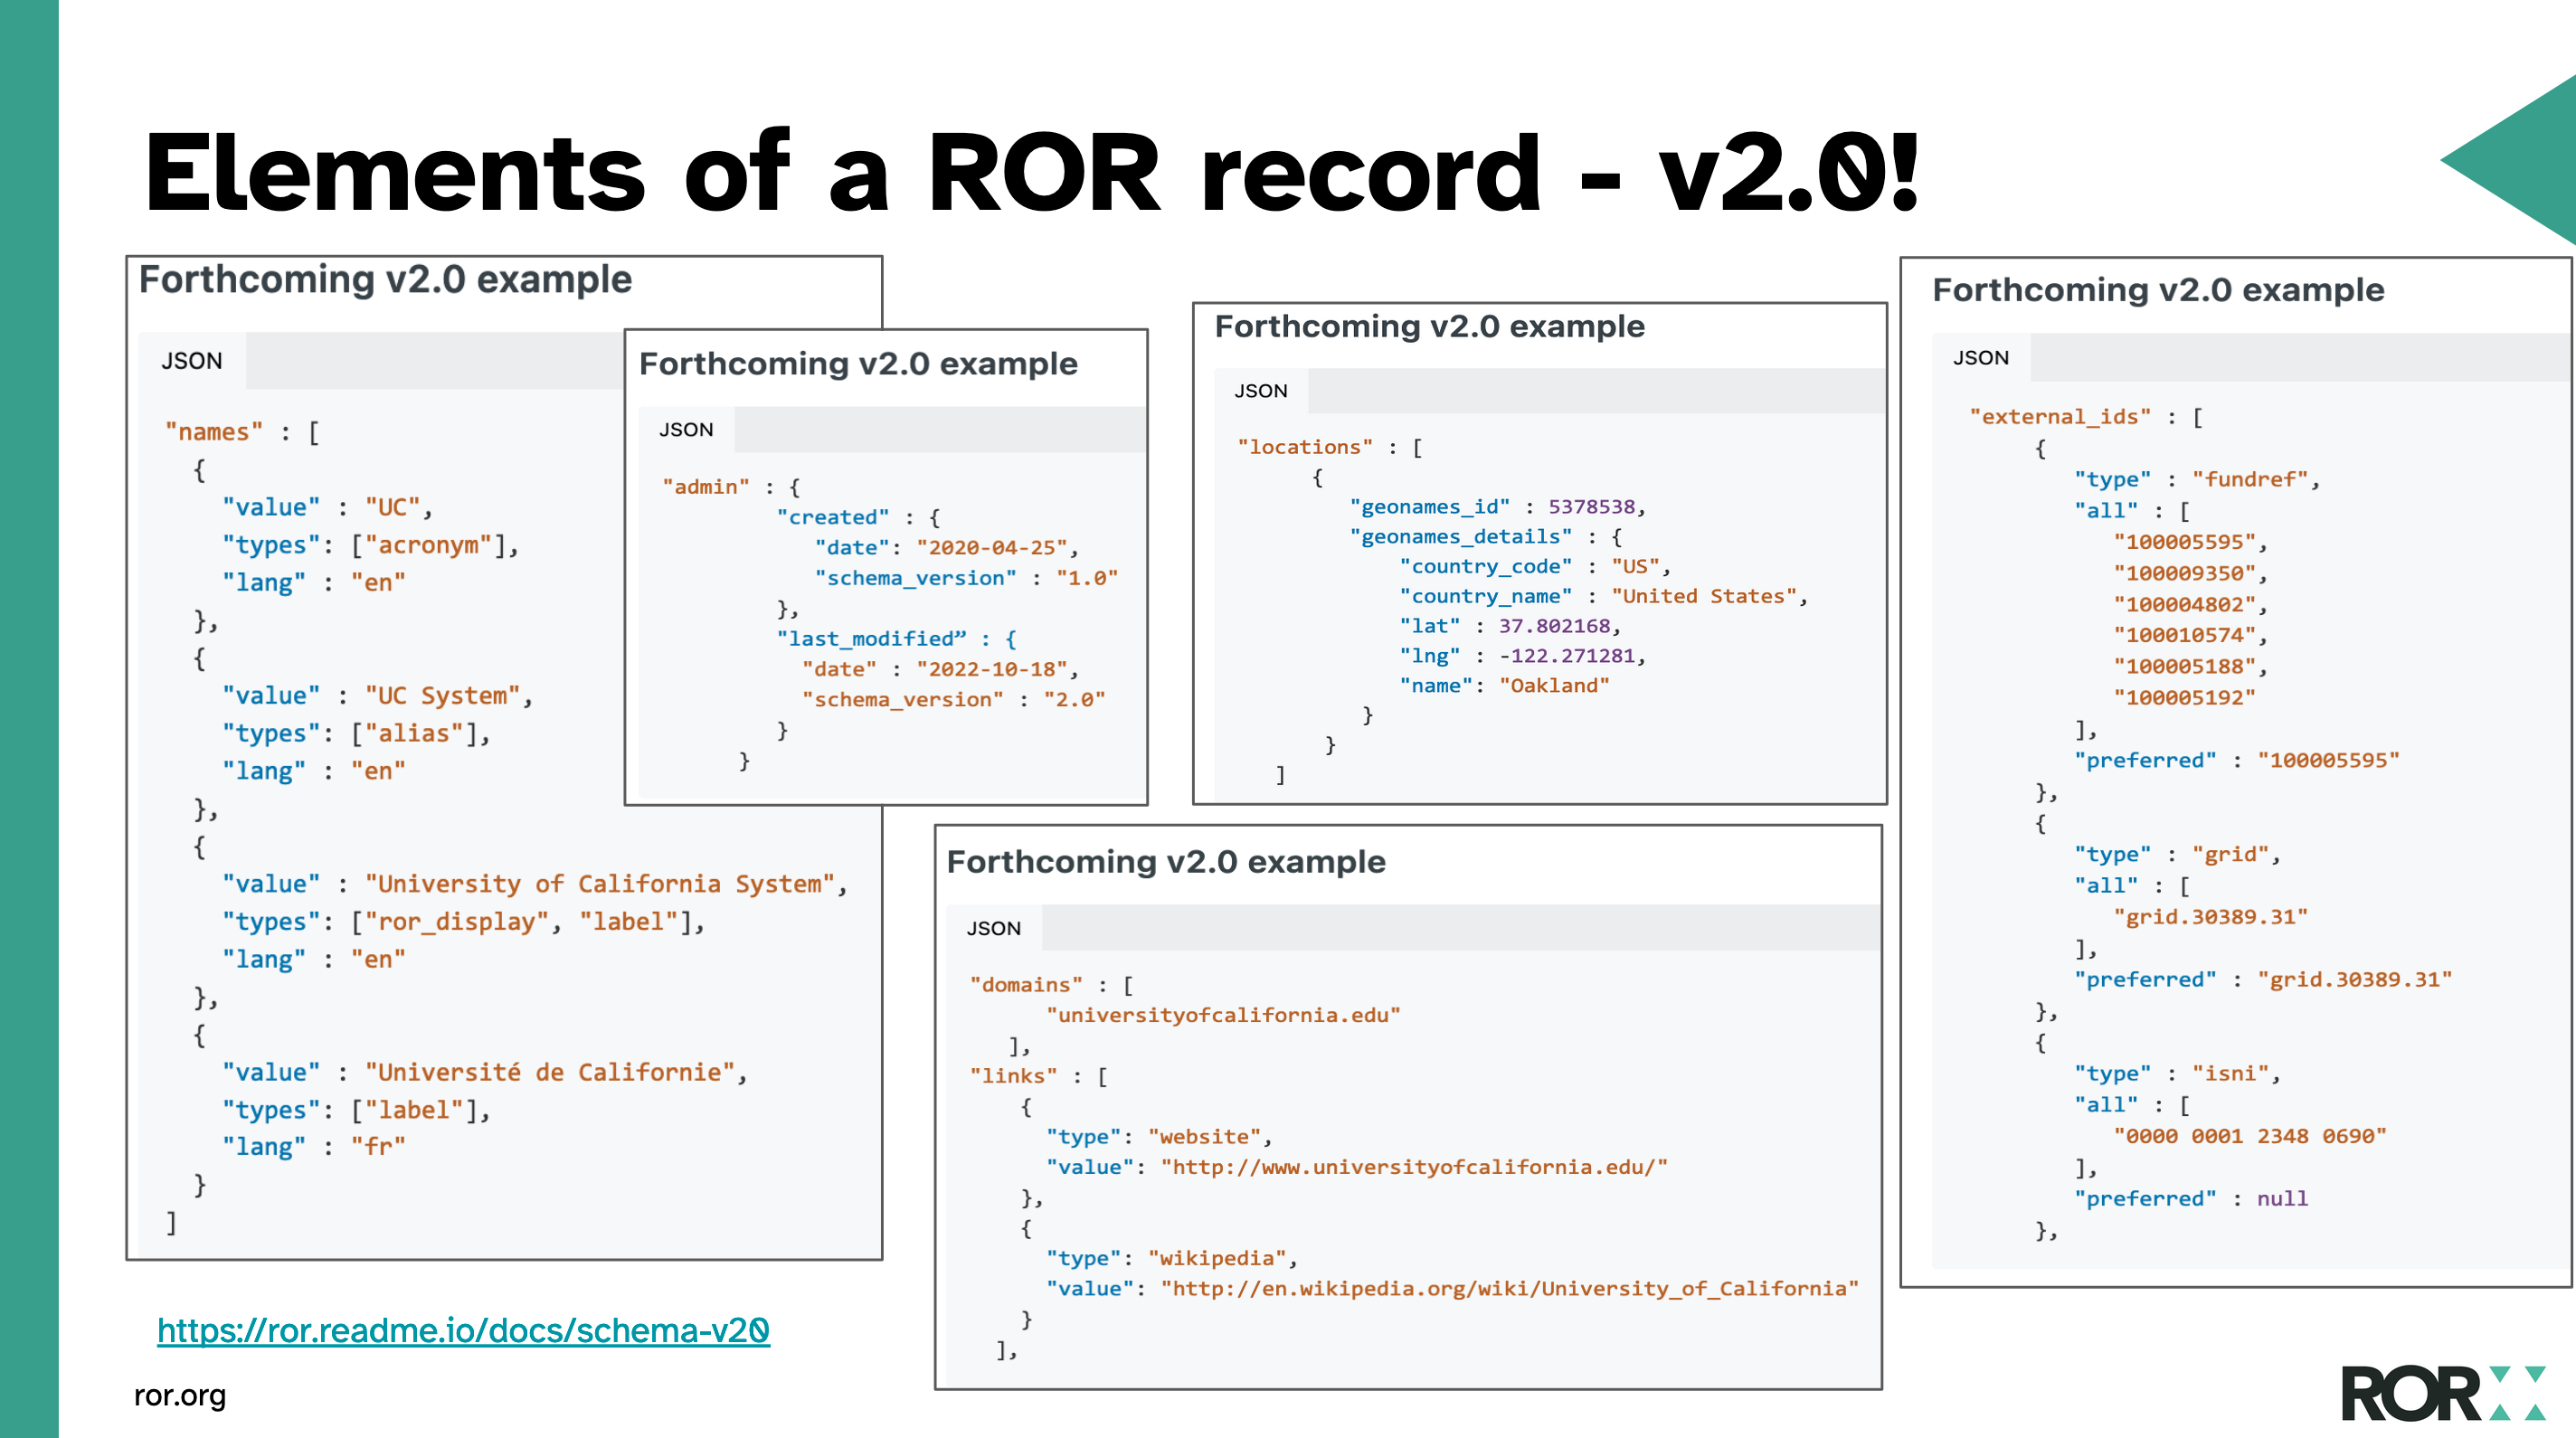 Elements of ROR schema version 2